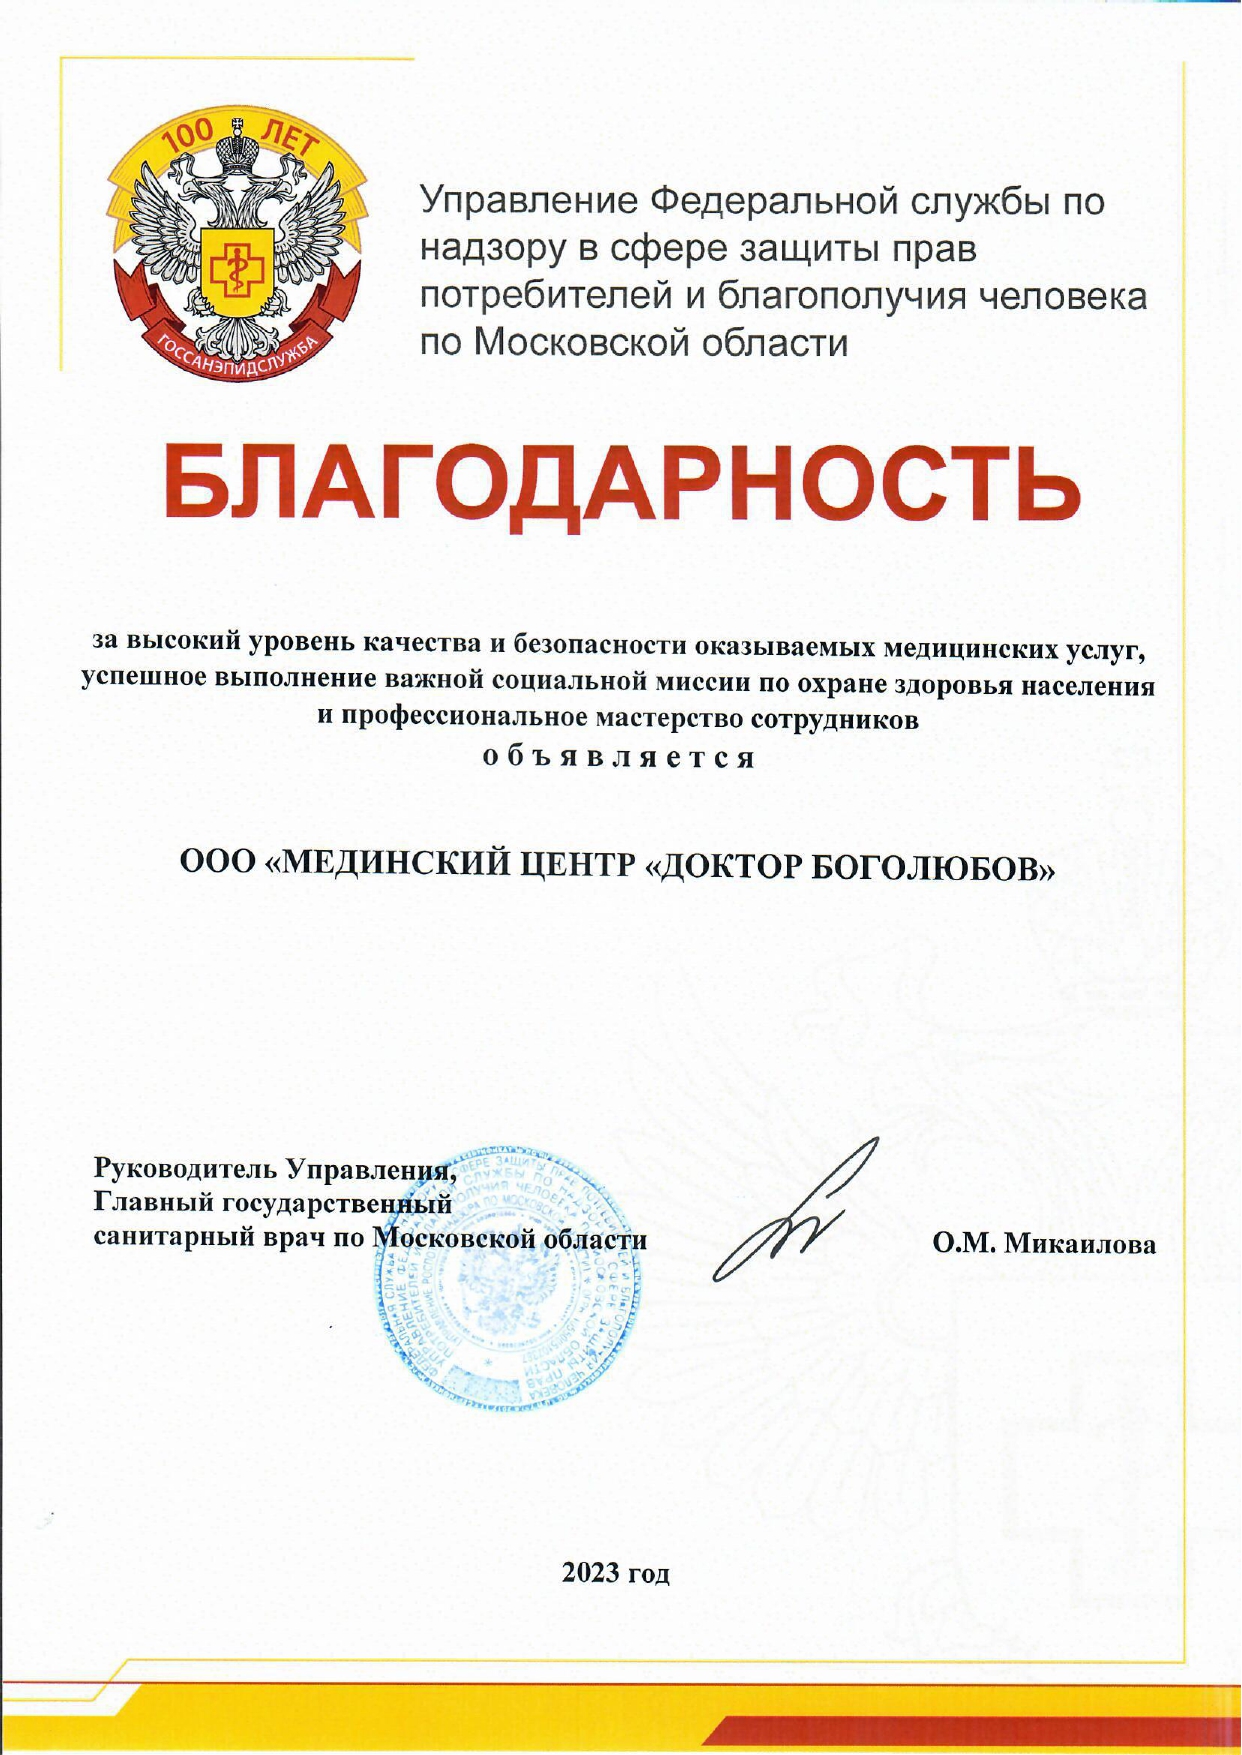 Балгодарность от Управления Федеральной службы по надзору в сфере защиты прав потребителей и благополучия человека по Московской области